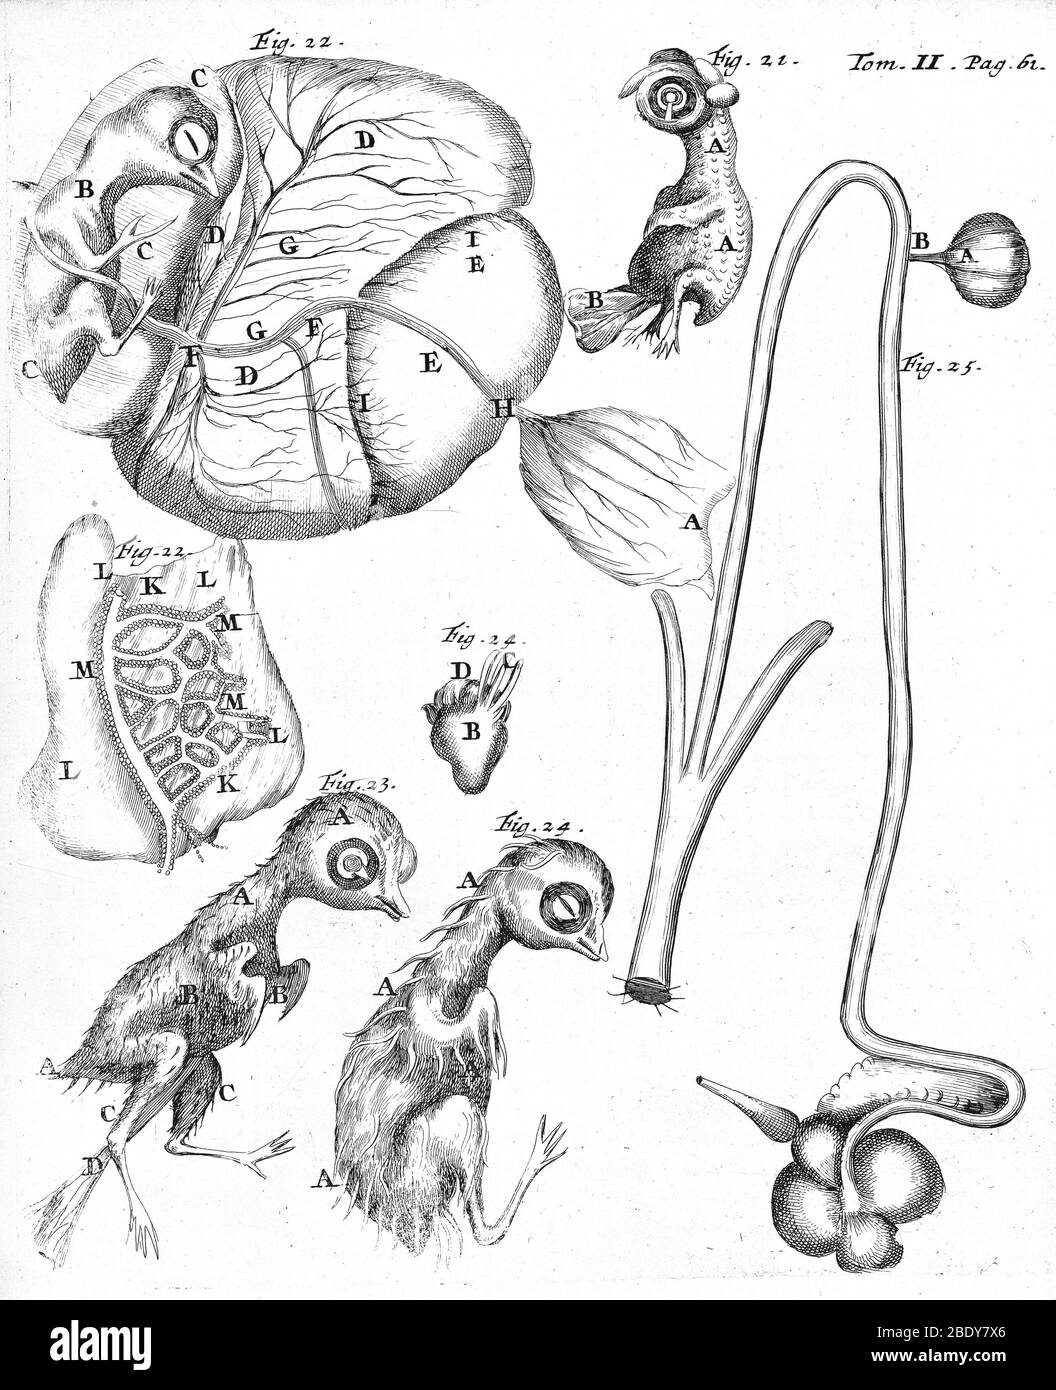 Ébryologie de Chick, Malpighi, 1687 Banque D'Images